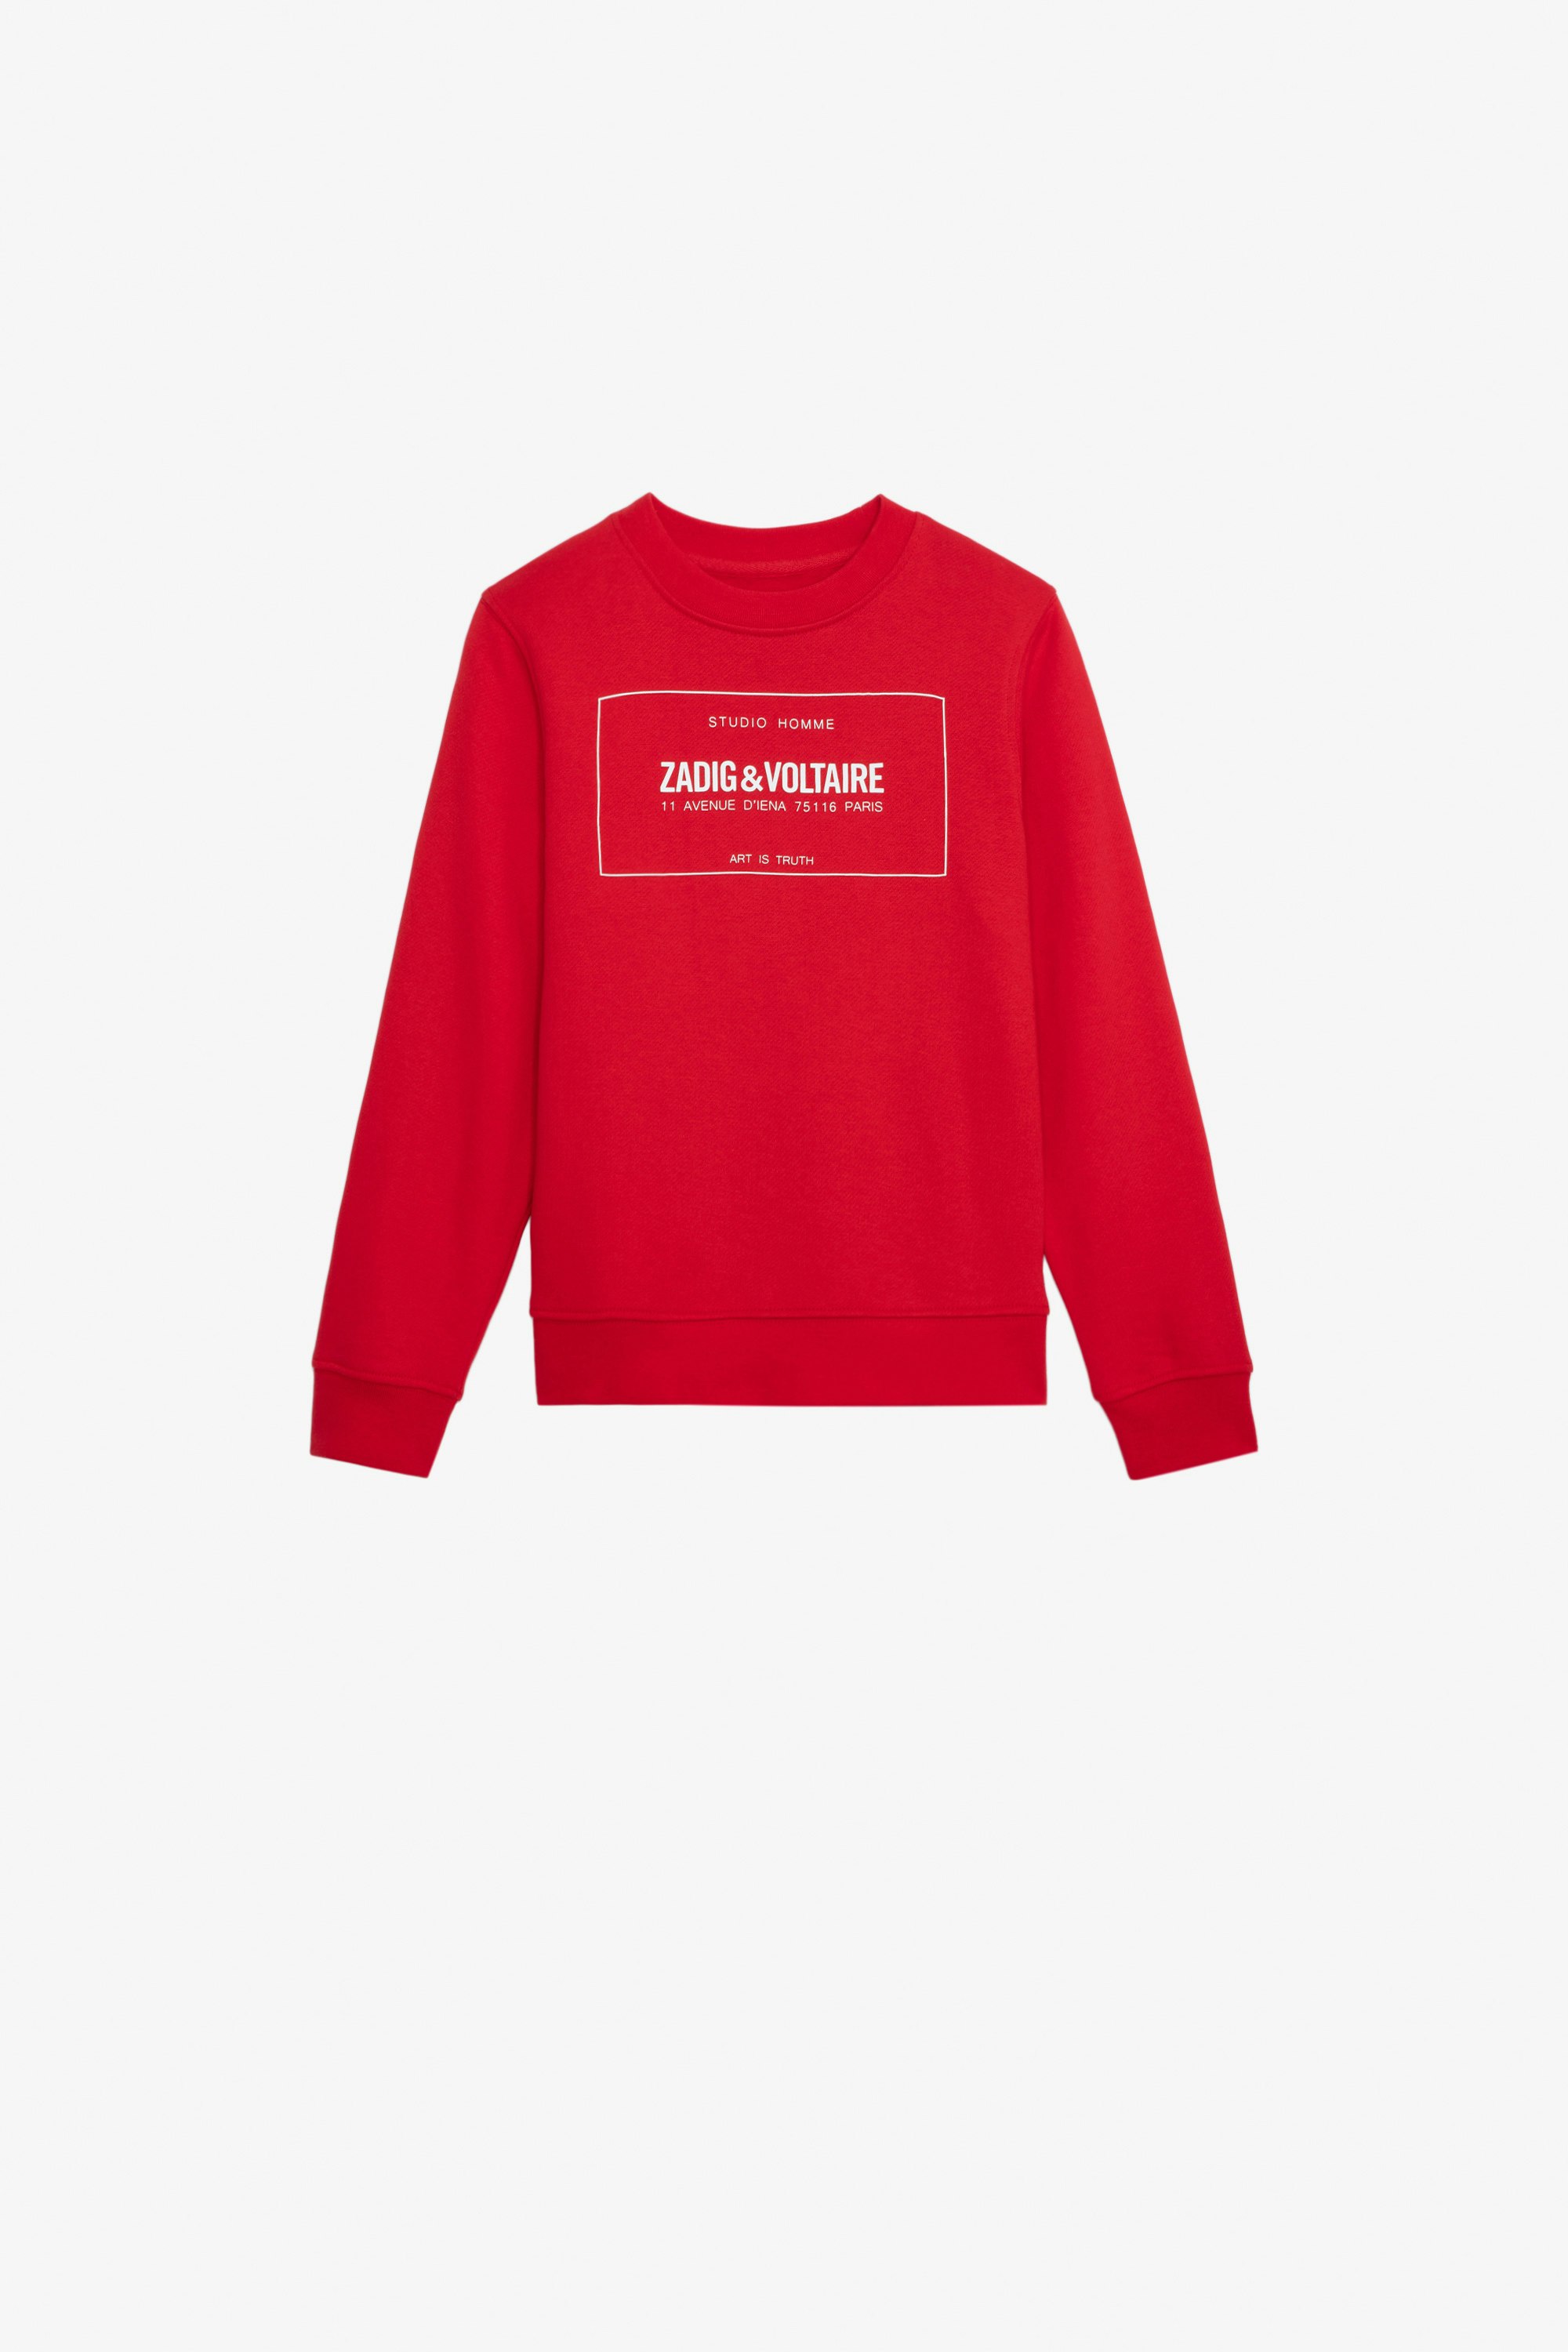 Simba Boys’ Sweatshirt Boys’ red cotton fleece sweatshirt with insignia.